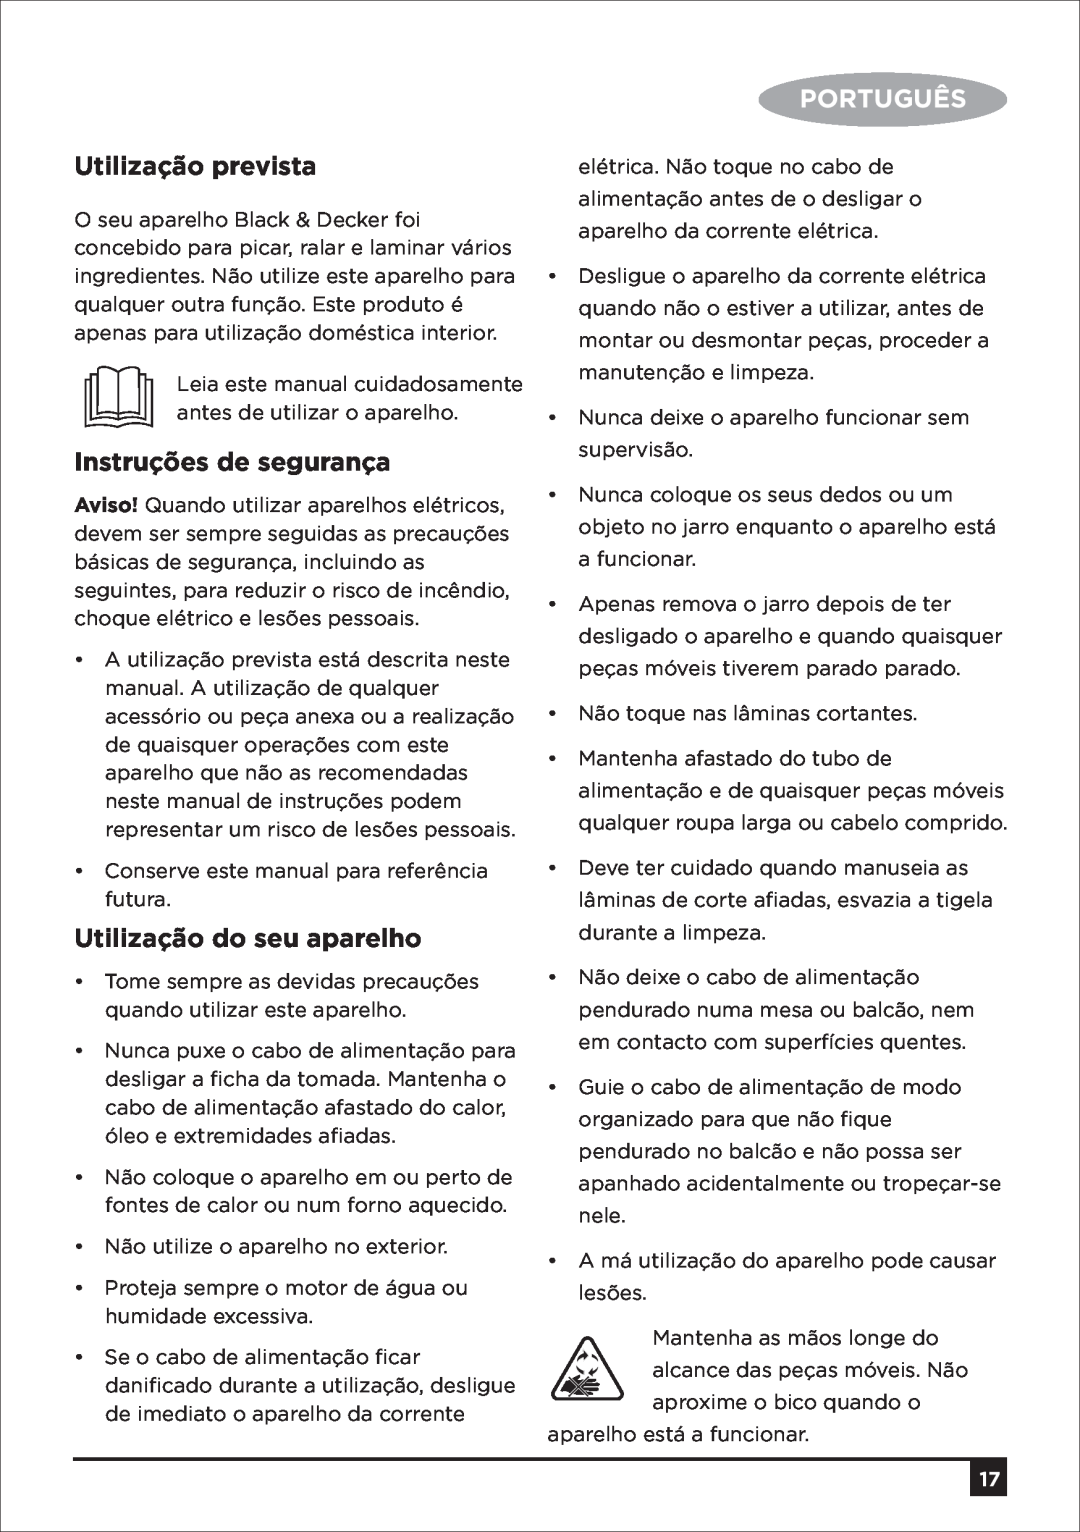 Black & Decker SM250 manual Utilização prevista, Instruções de segurança, Utilização do seu aparelho, Português 